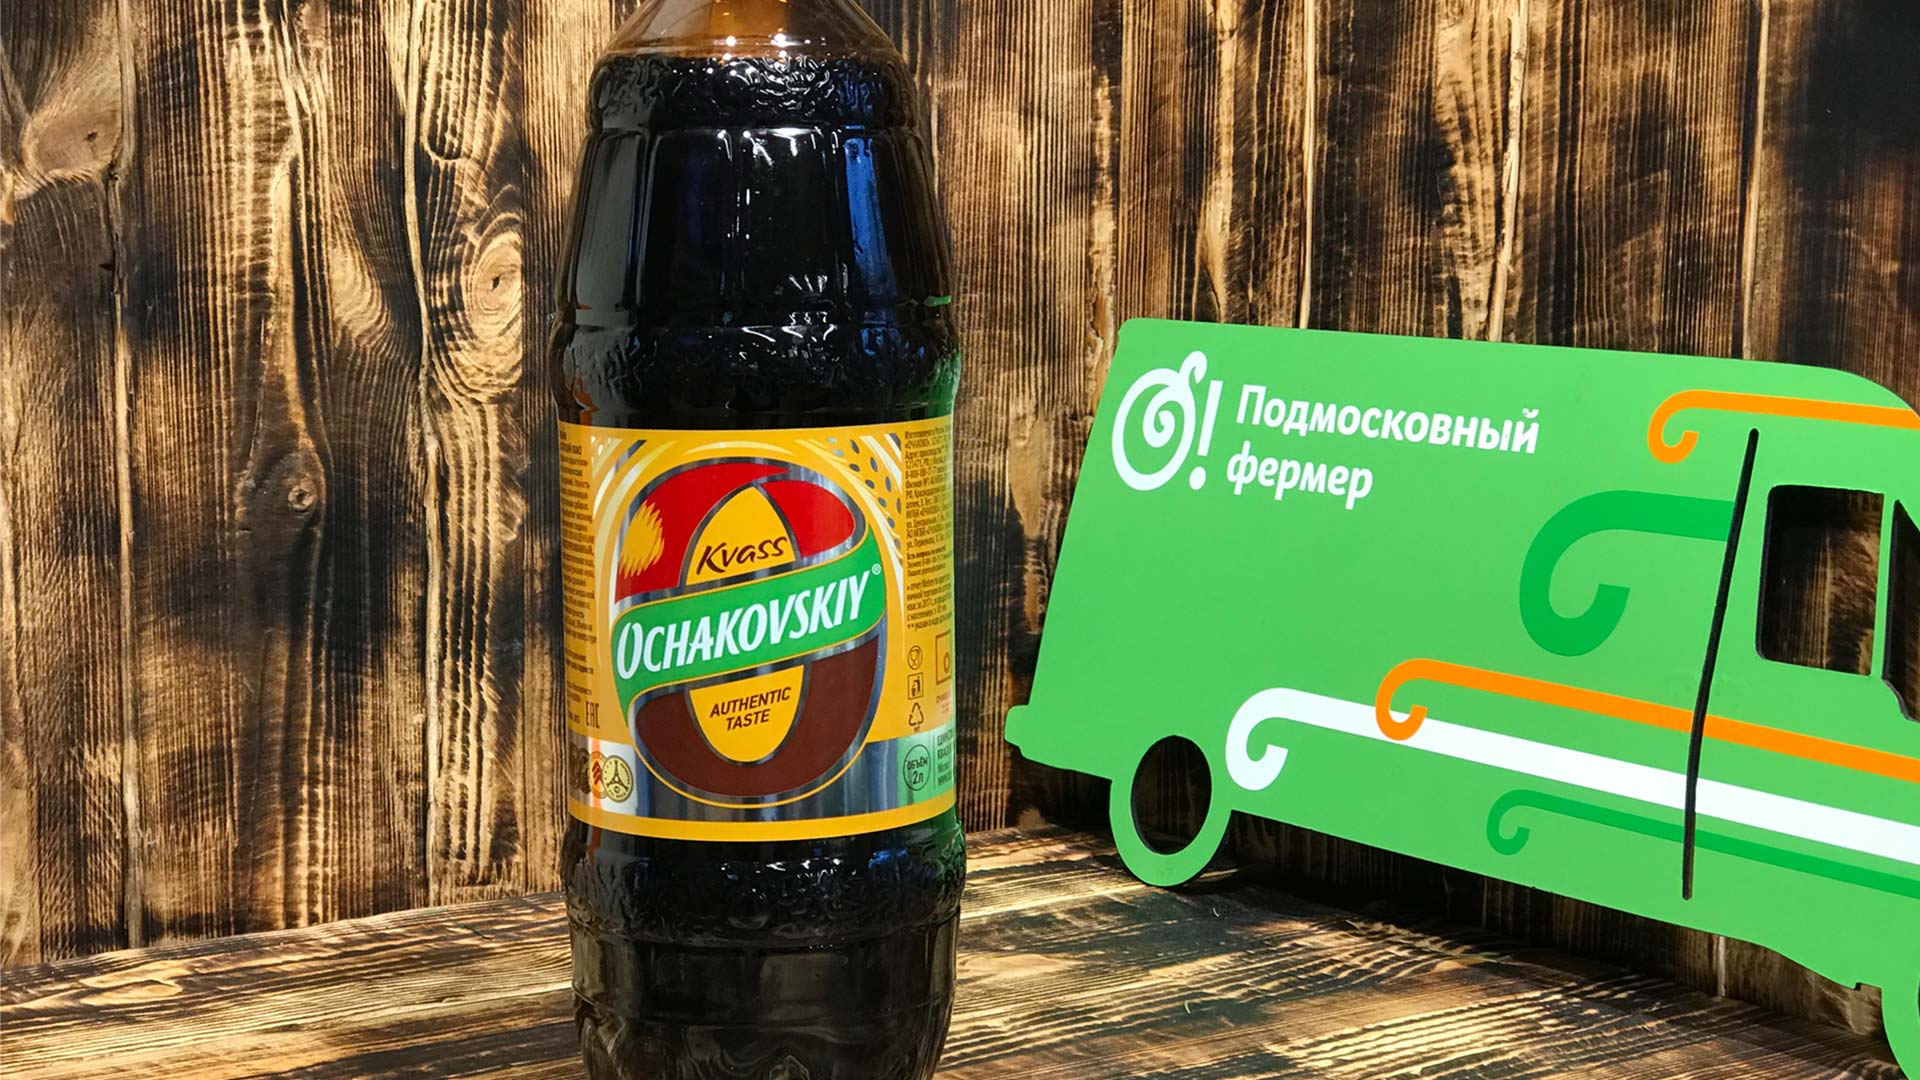 Квас "Очаковский" 2 литра (ВТ) 